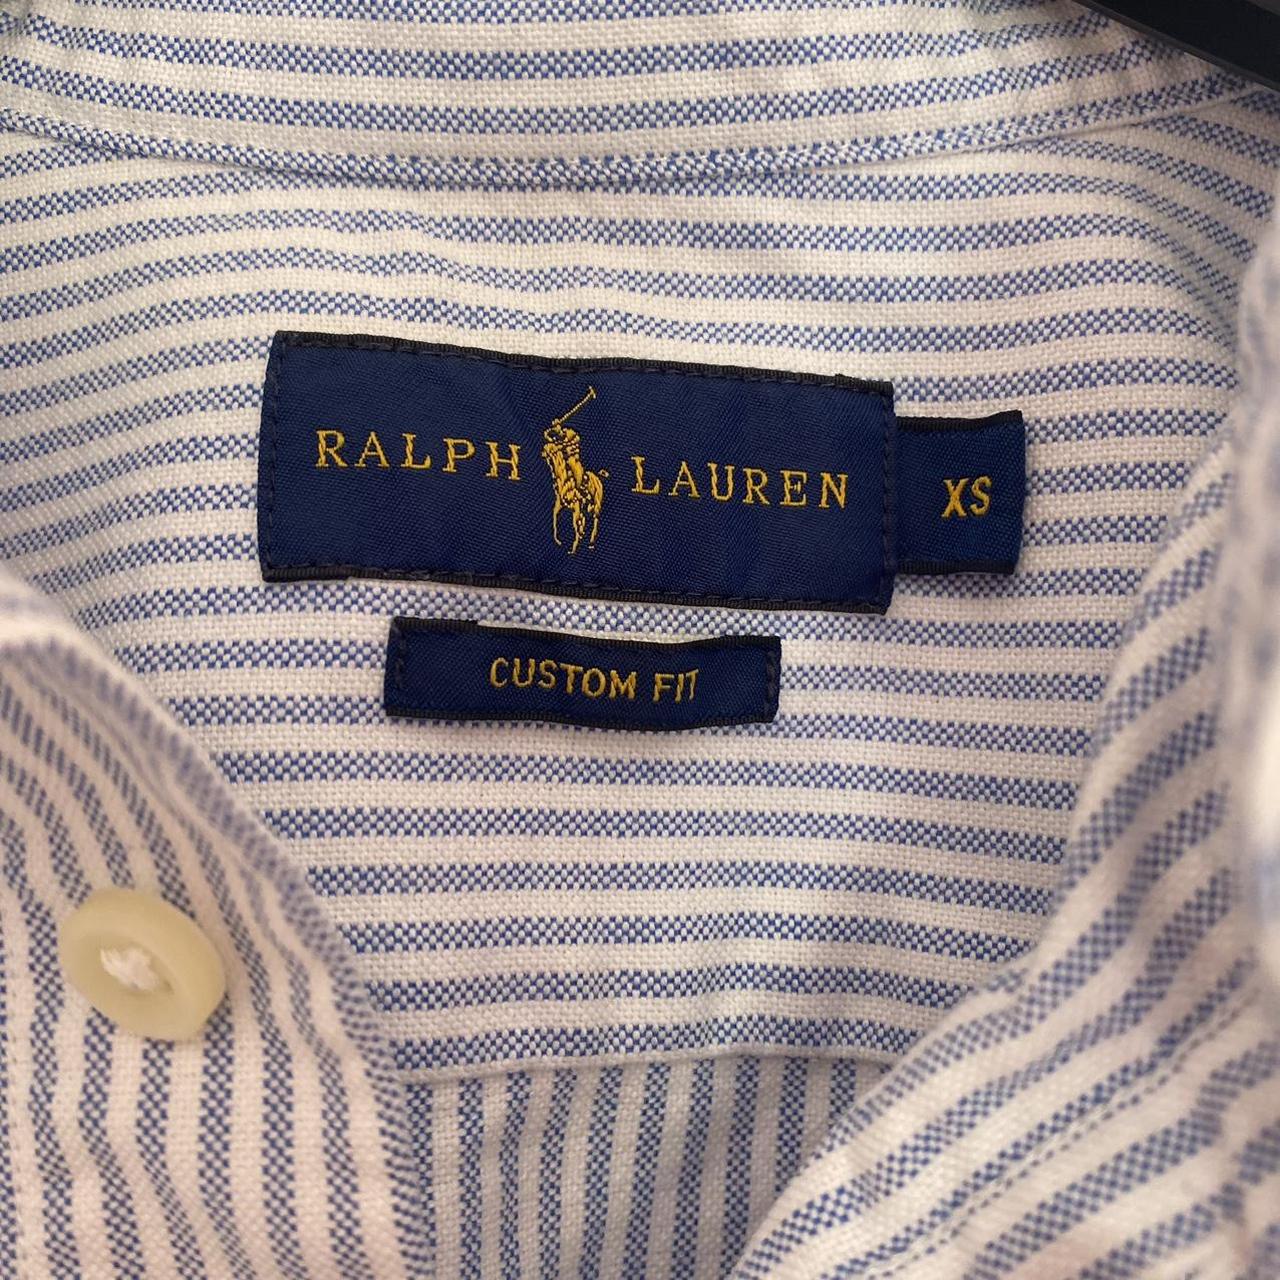 RALPH LAUREN - Blue and White Striped Shirt - long... - Depop